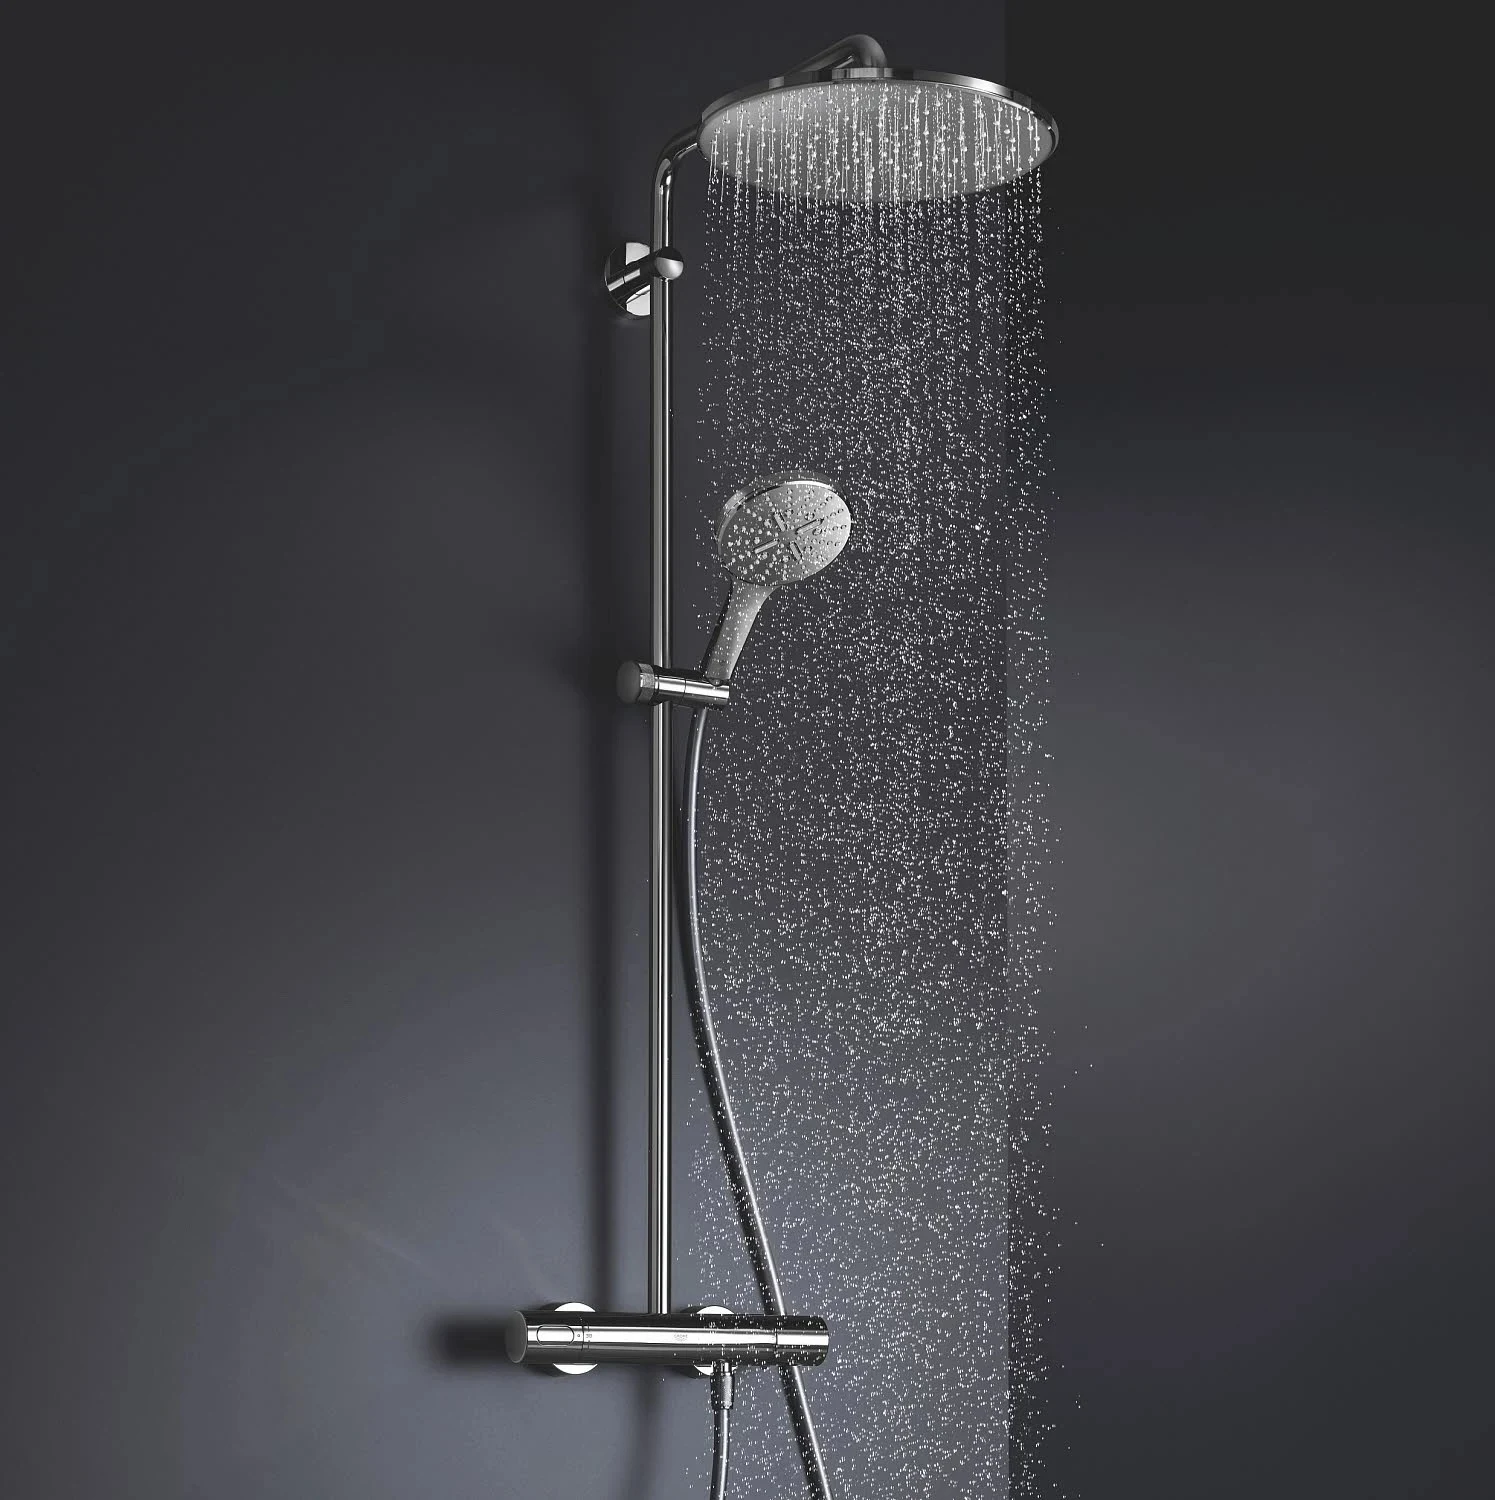 Duschsystem für die perfekte Duschwasser-Temperatur